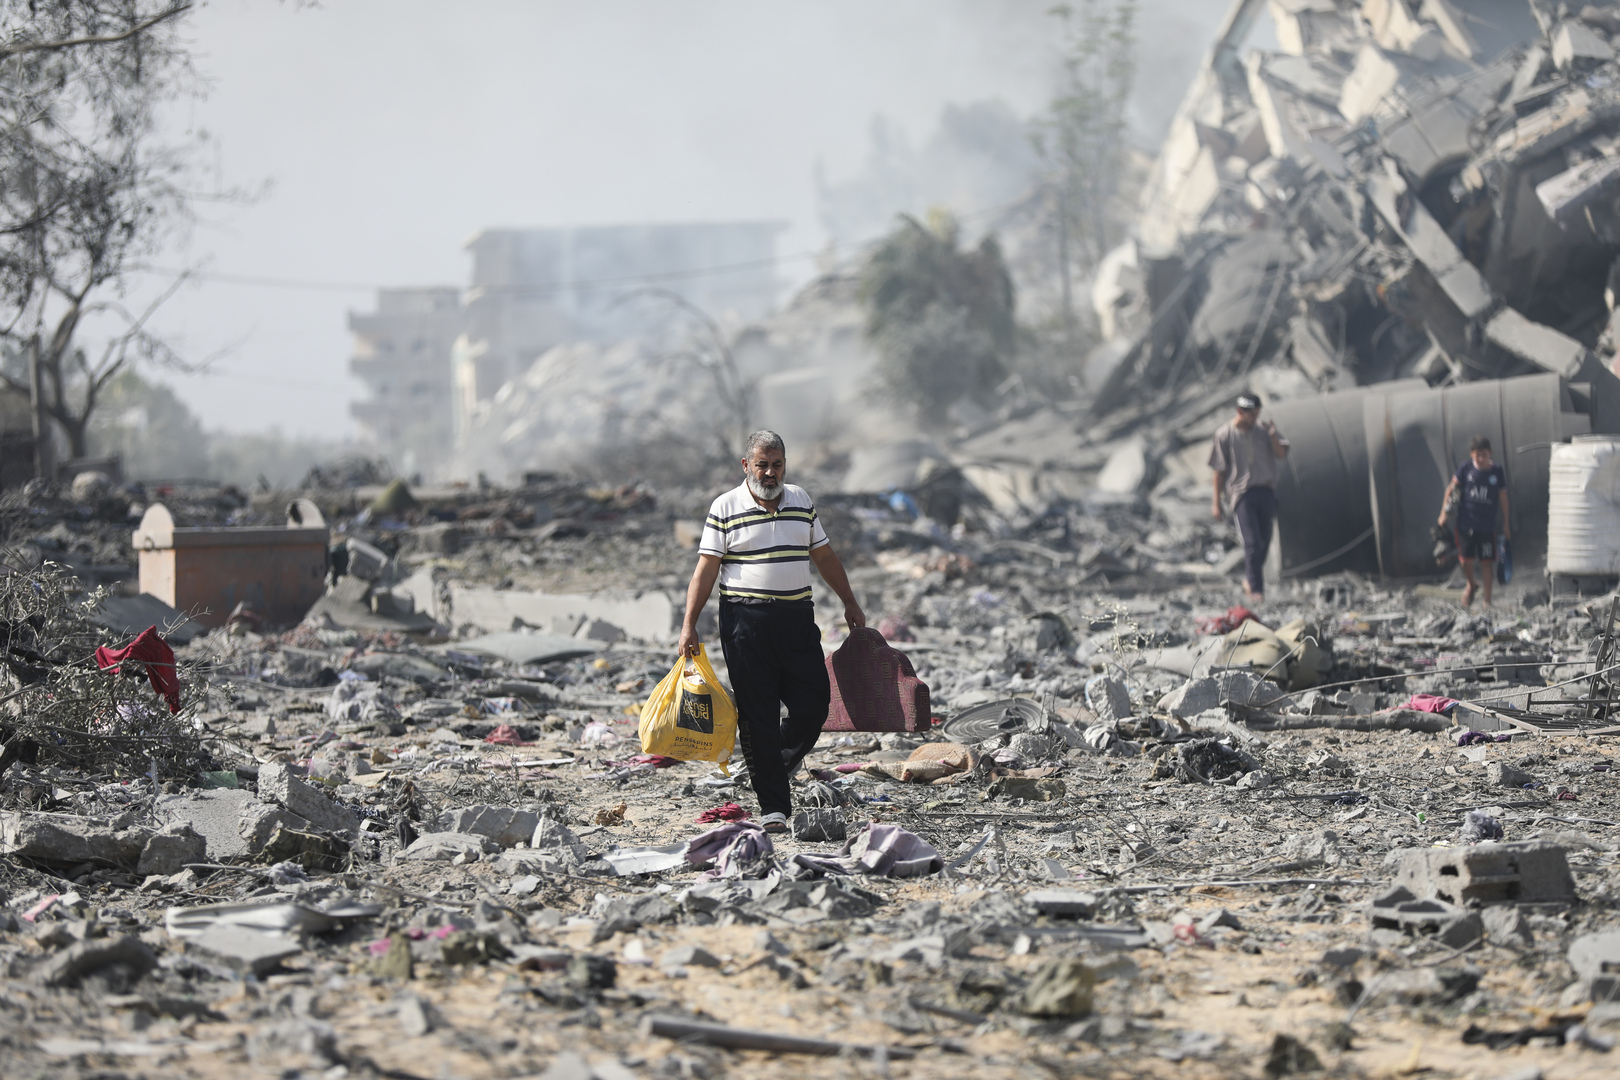 غزة في صور الأقمار الاصطناعية قبل وبعد القصف الإسرائيلي